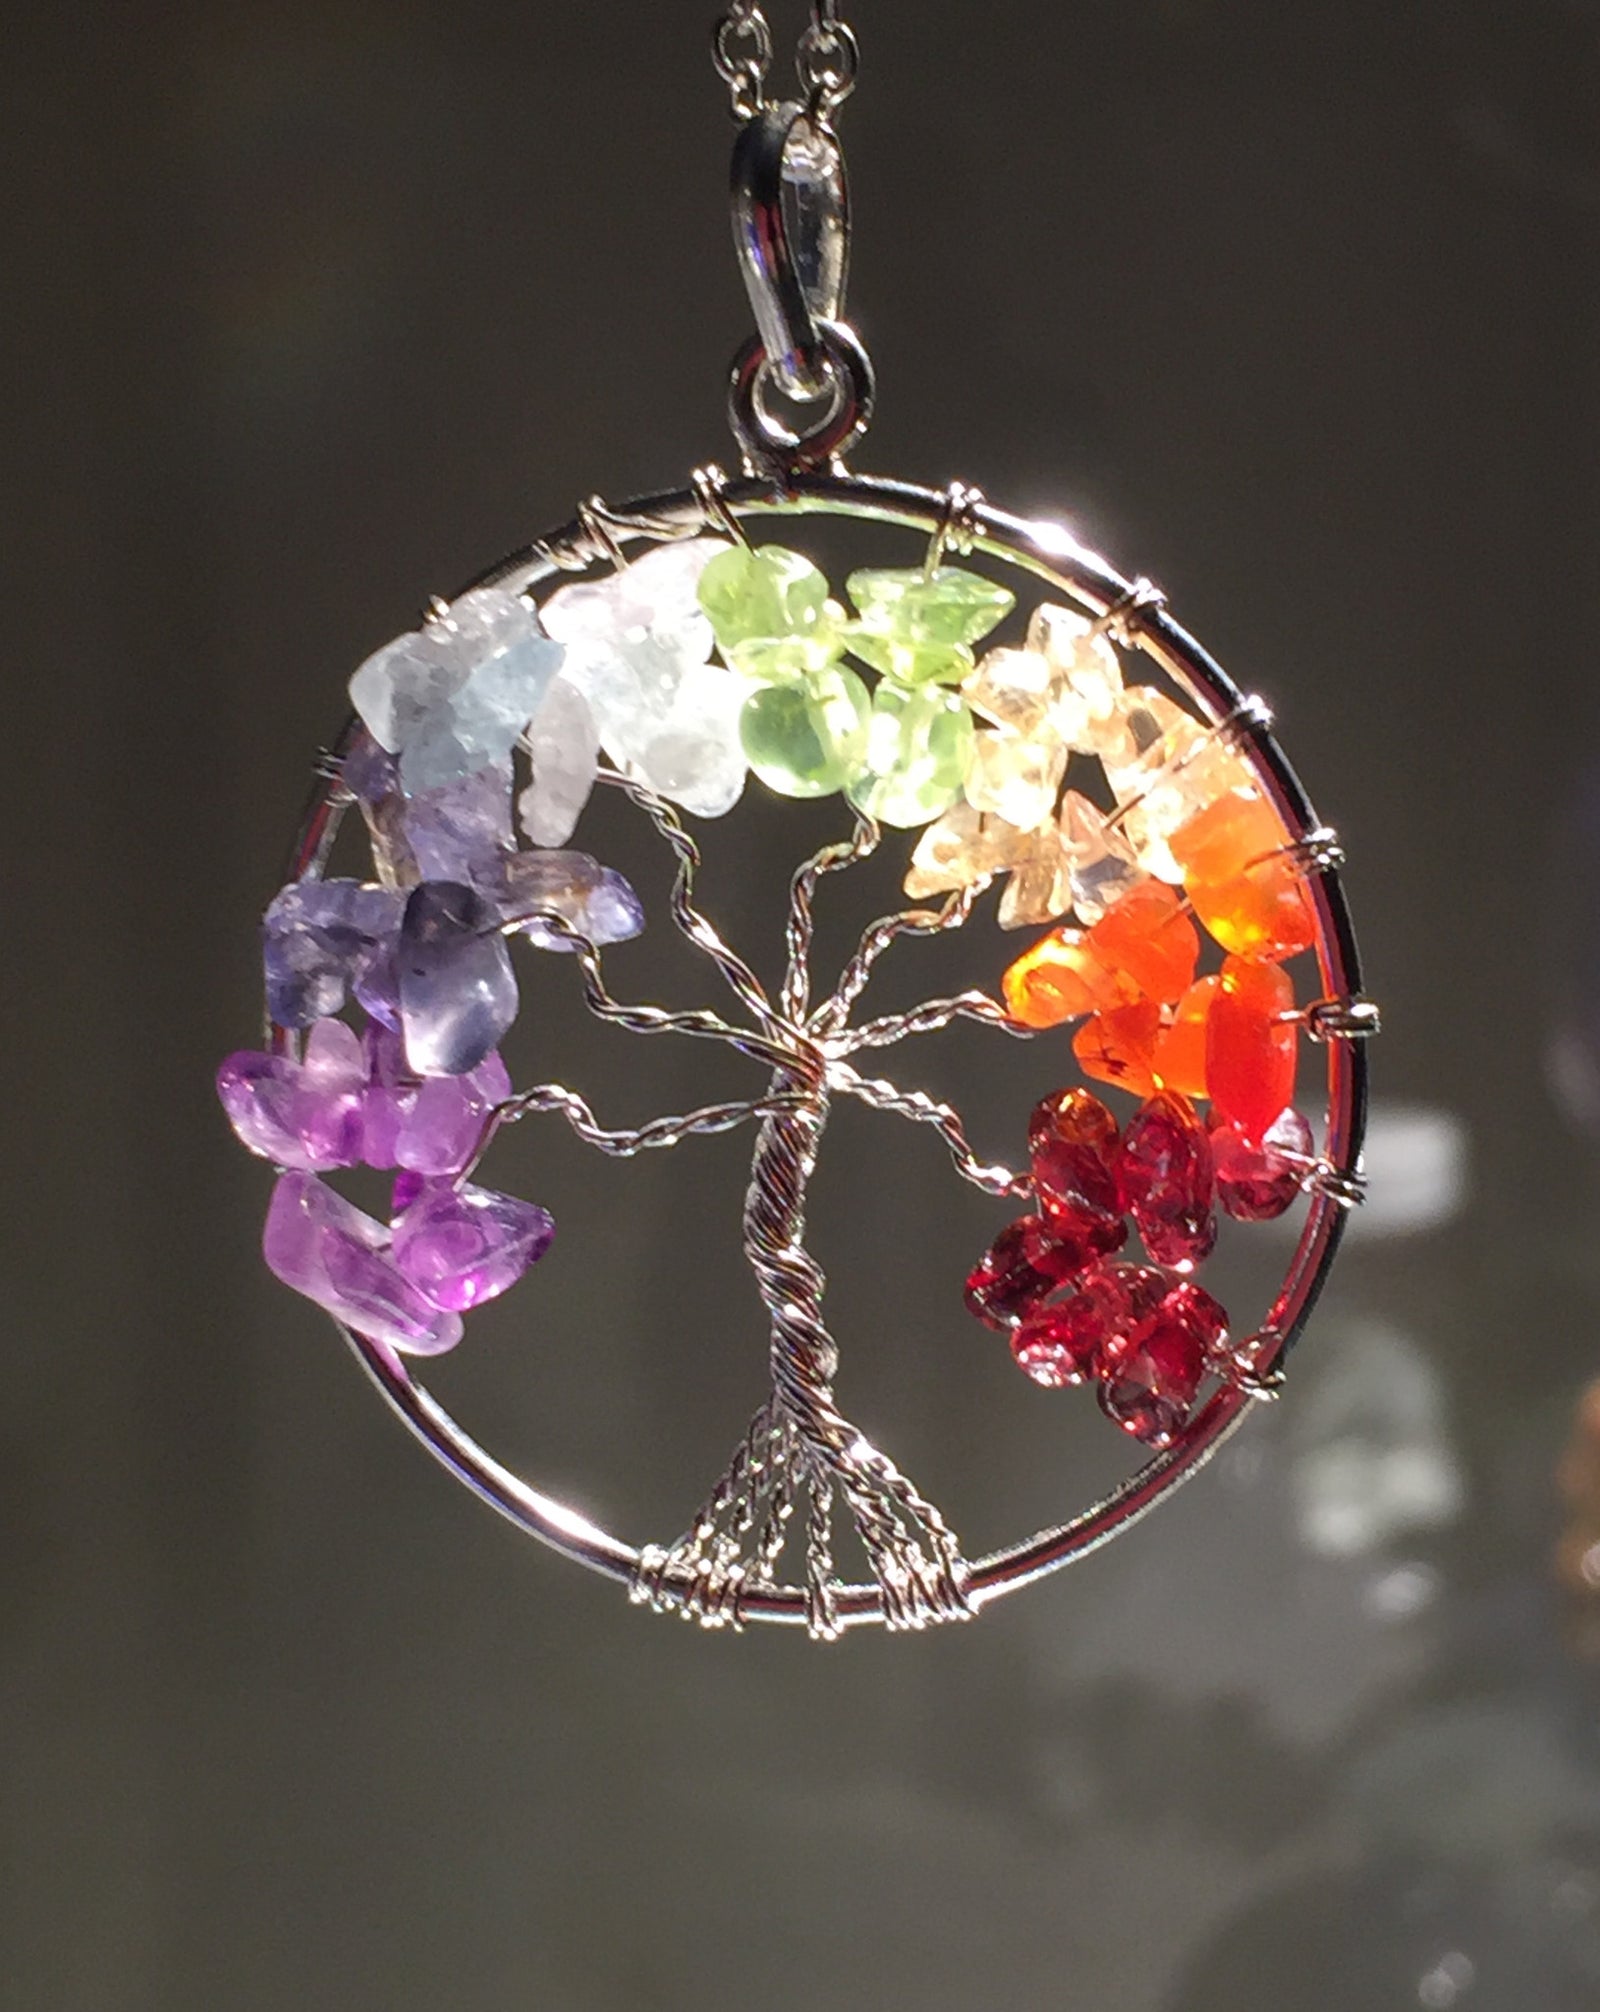 Sherif Gemstones 7 Chakra Gemstone Tree Of Life Pendant Necklace Healing  Energy Reiki Balance @ Best Price Online | Jumia Egypt